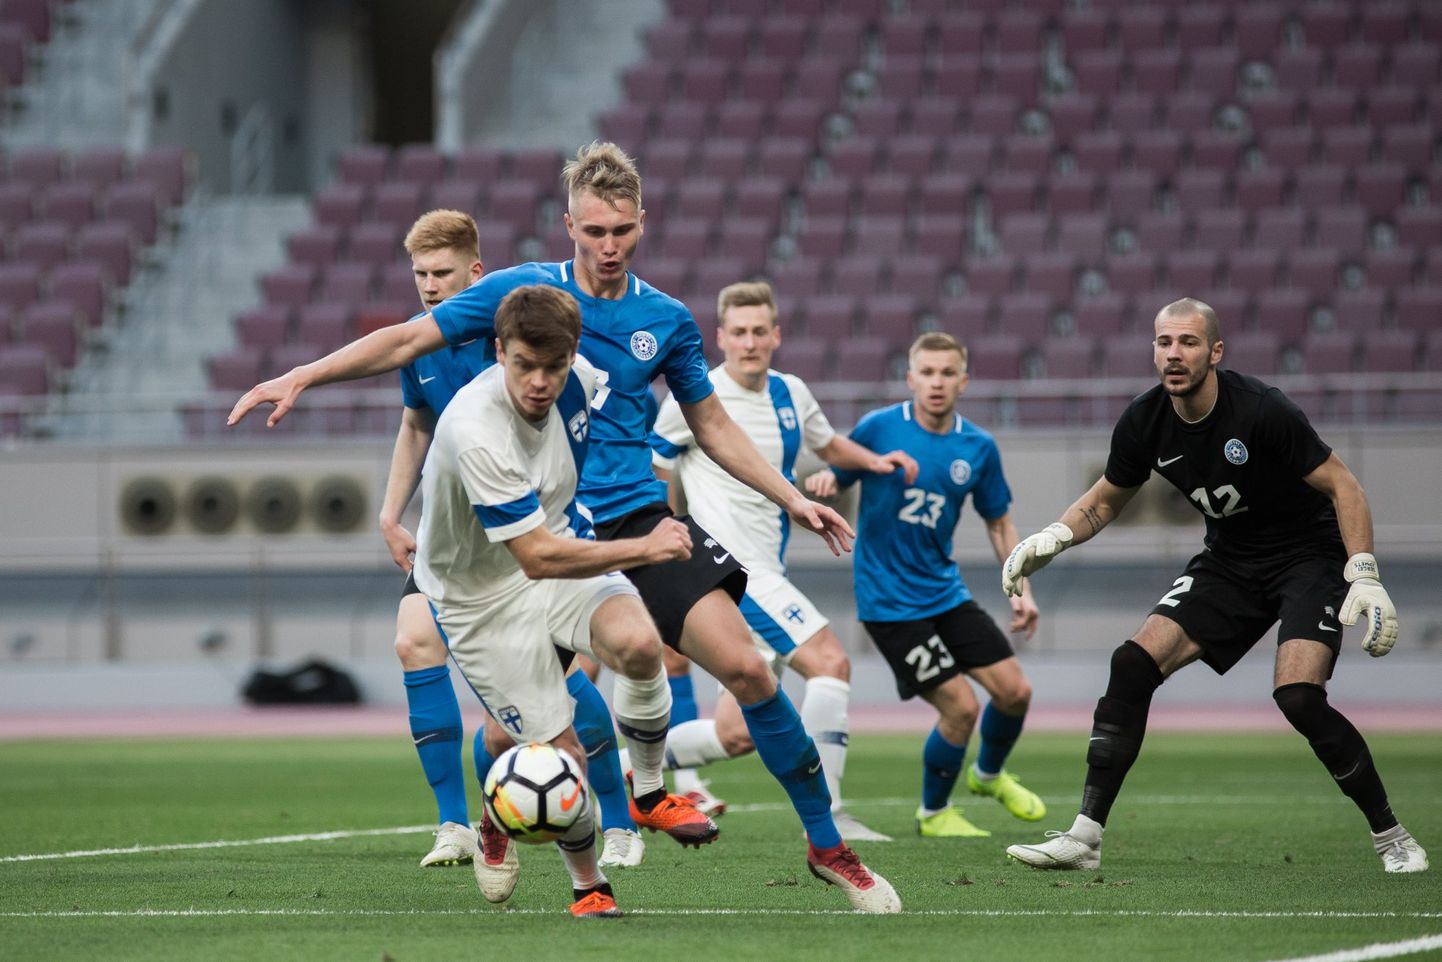 Fotomeenutus Eesti-Soome kohtumisest 11. jaanuaril, mille eestlased võitsid 2:1.